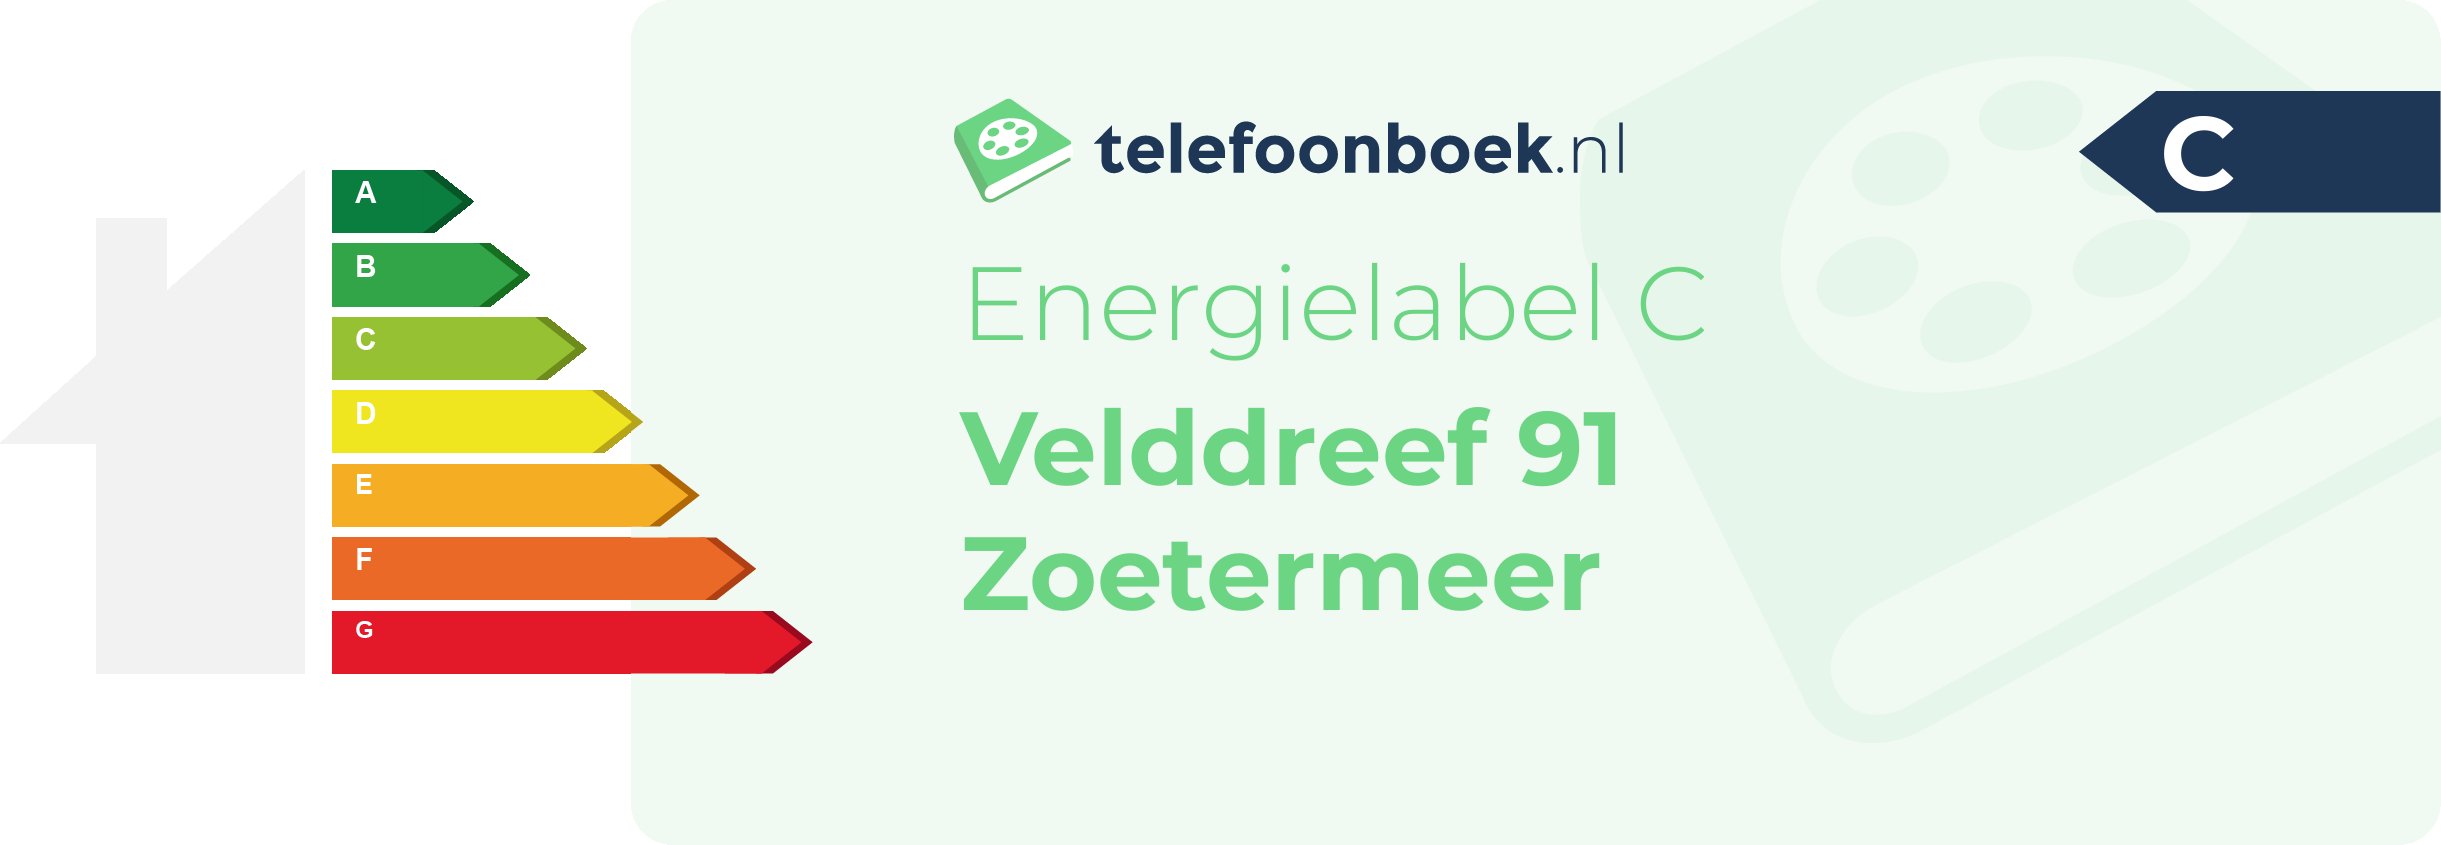 Energielabel Velddreef 91 Zoetermeer